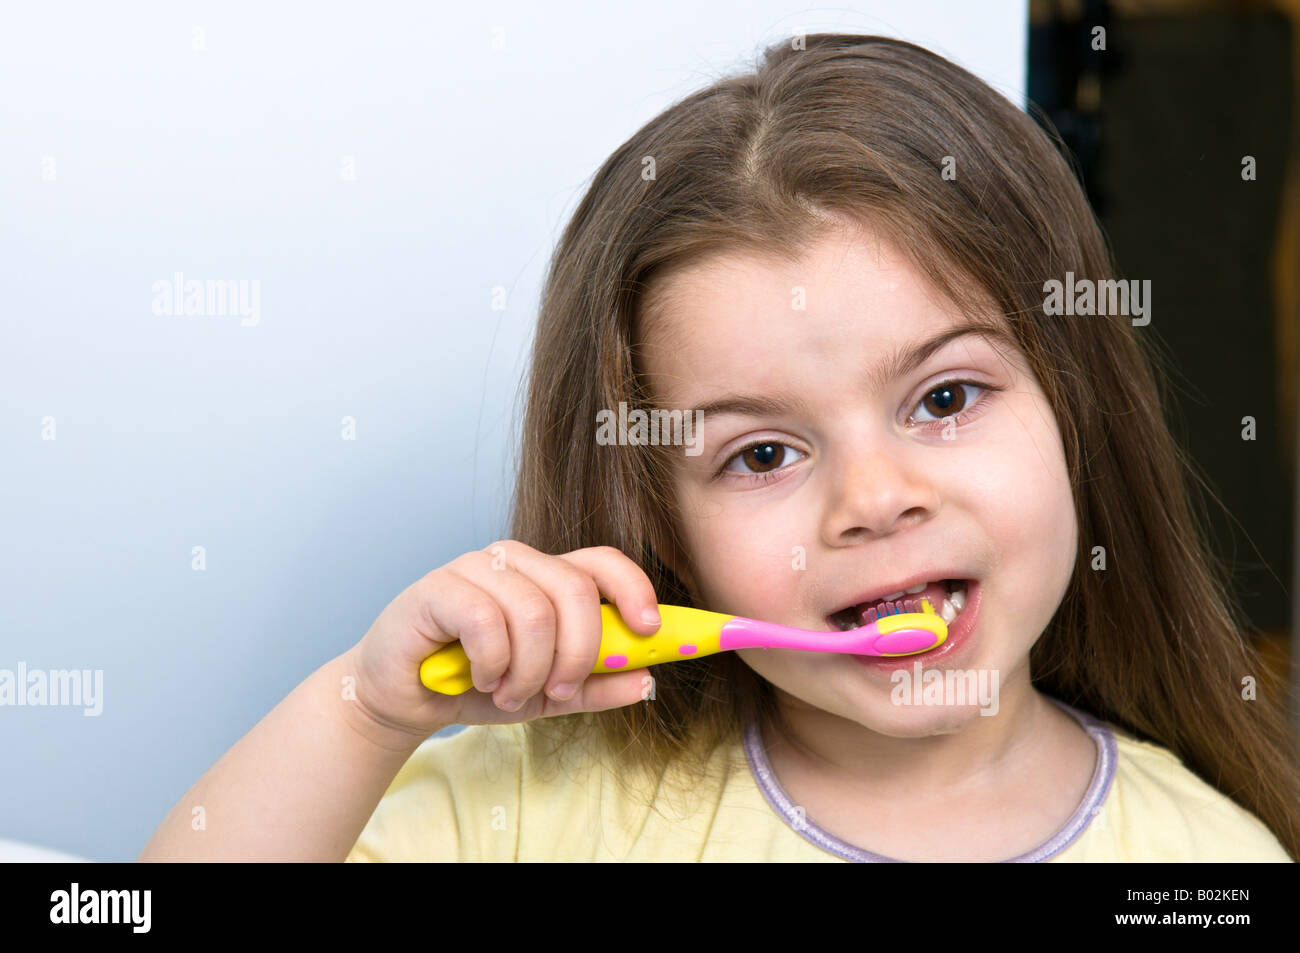 Ein junges Mädchen 4 Jahre alt, mit langen braunen Haaren Bürsten ihre  Zähne mit einer bunten rosa und gelb Kind s Zahnbürste Stockfotografie -  Alamy